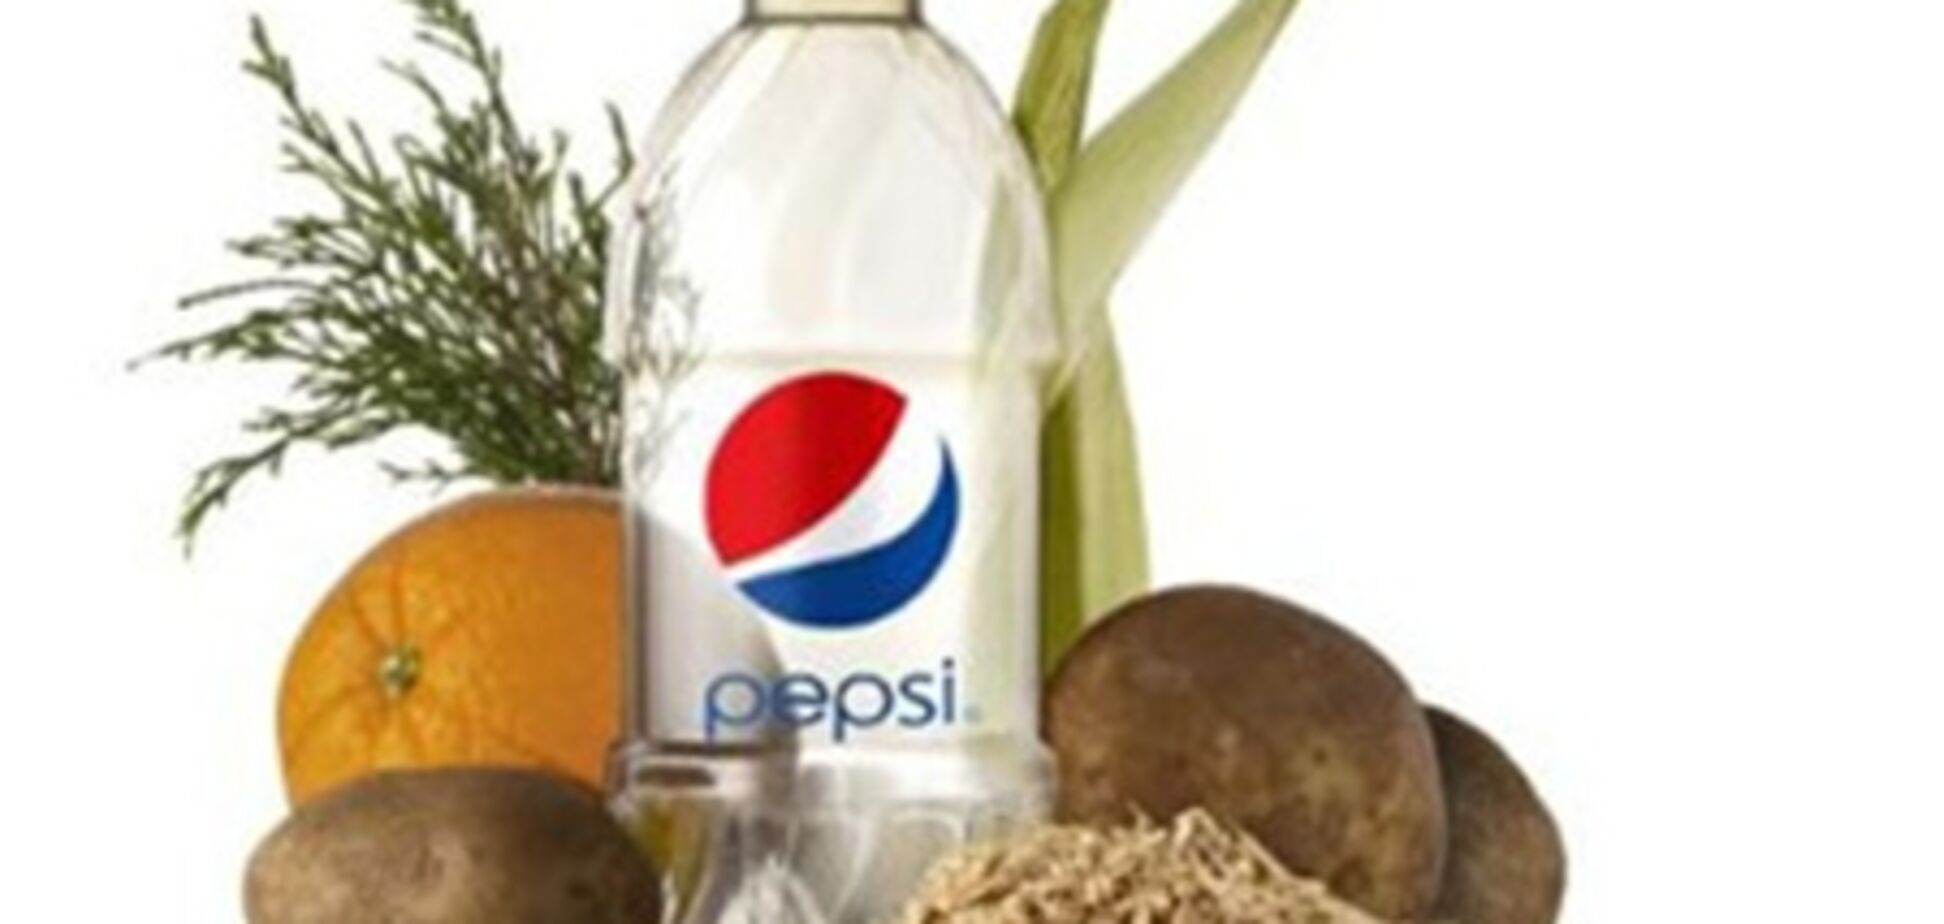 Pepsi представила первую бутылку на основе растительных материалов